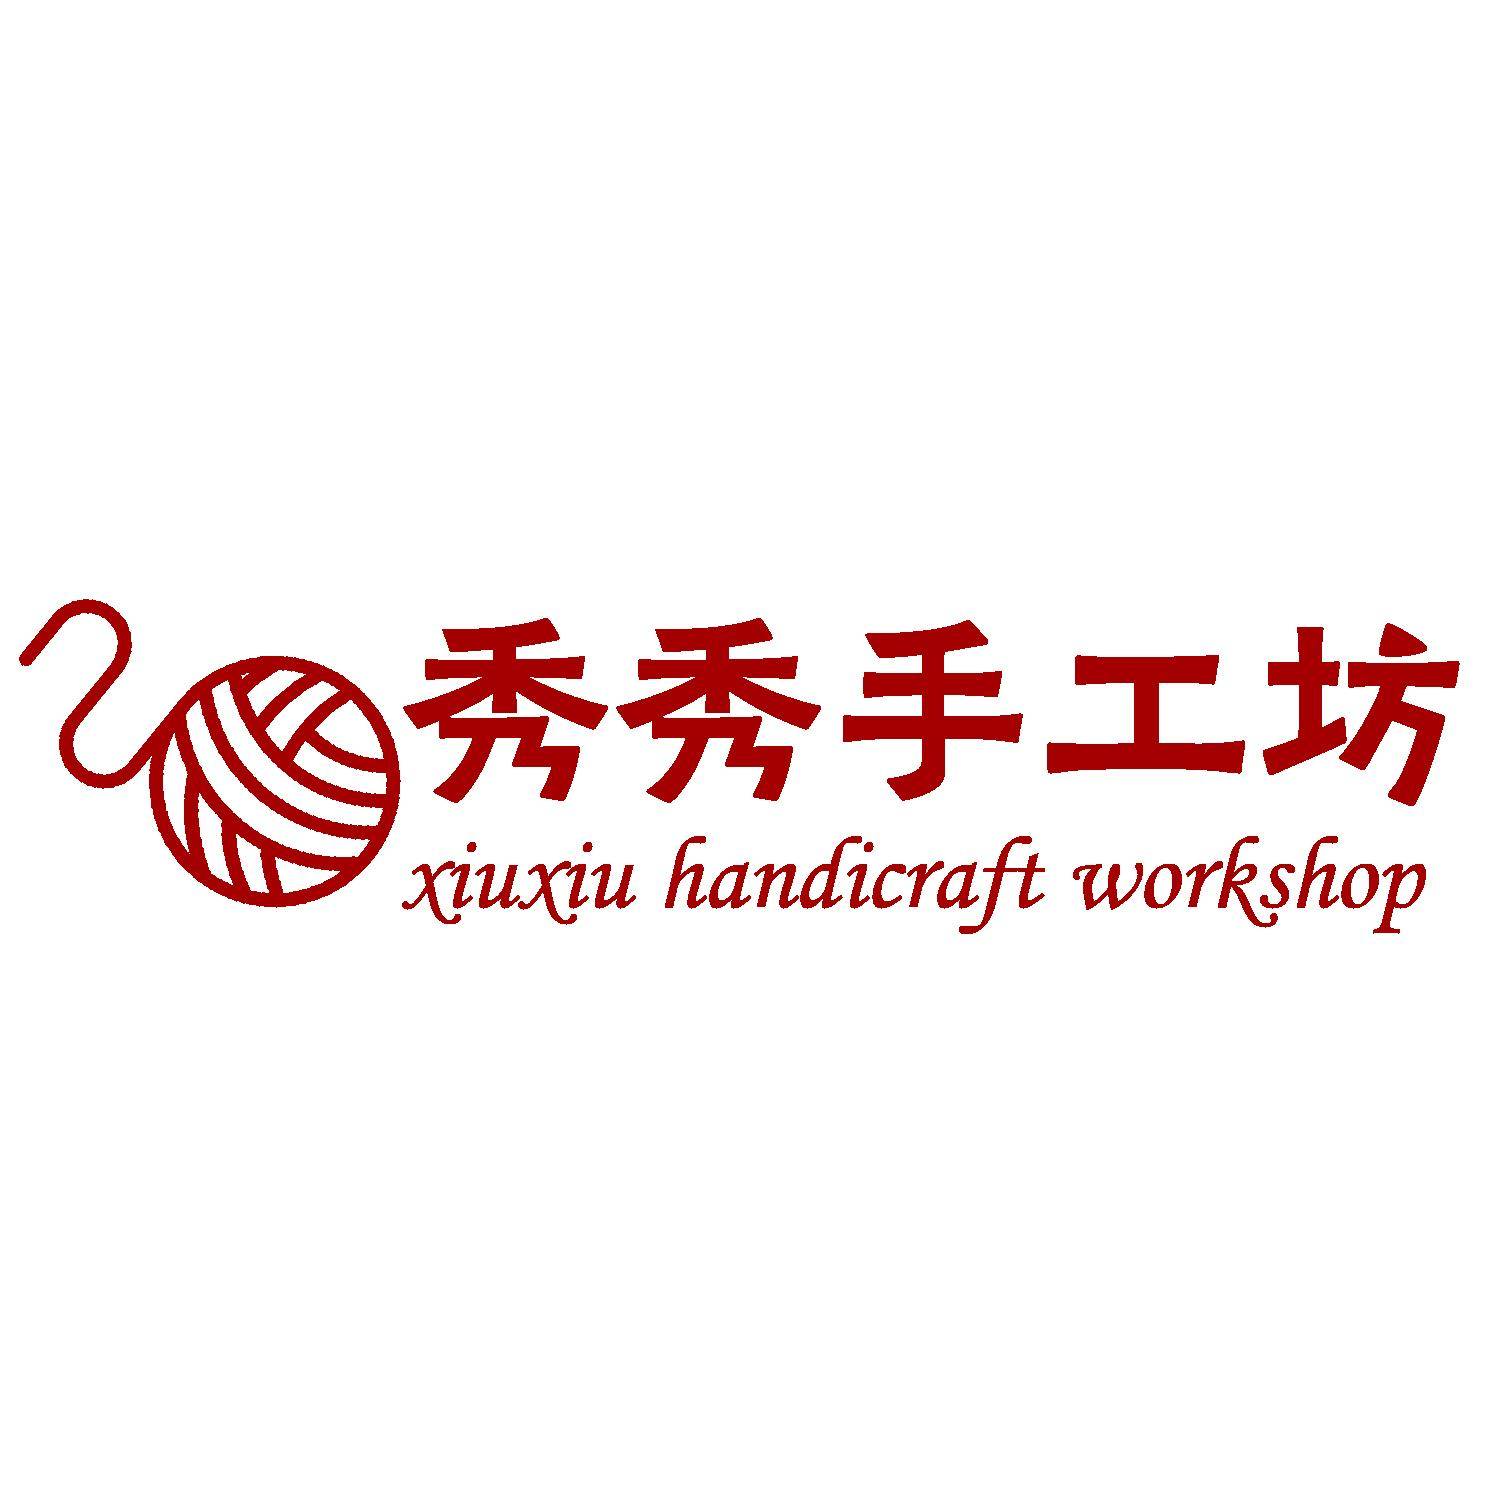 商标文字秀秀手工坊 xiuxiu handicraft workshop商标注册号 49342184